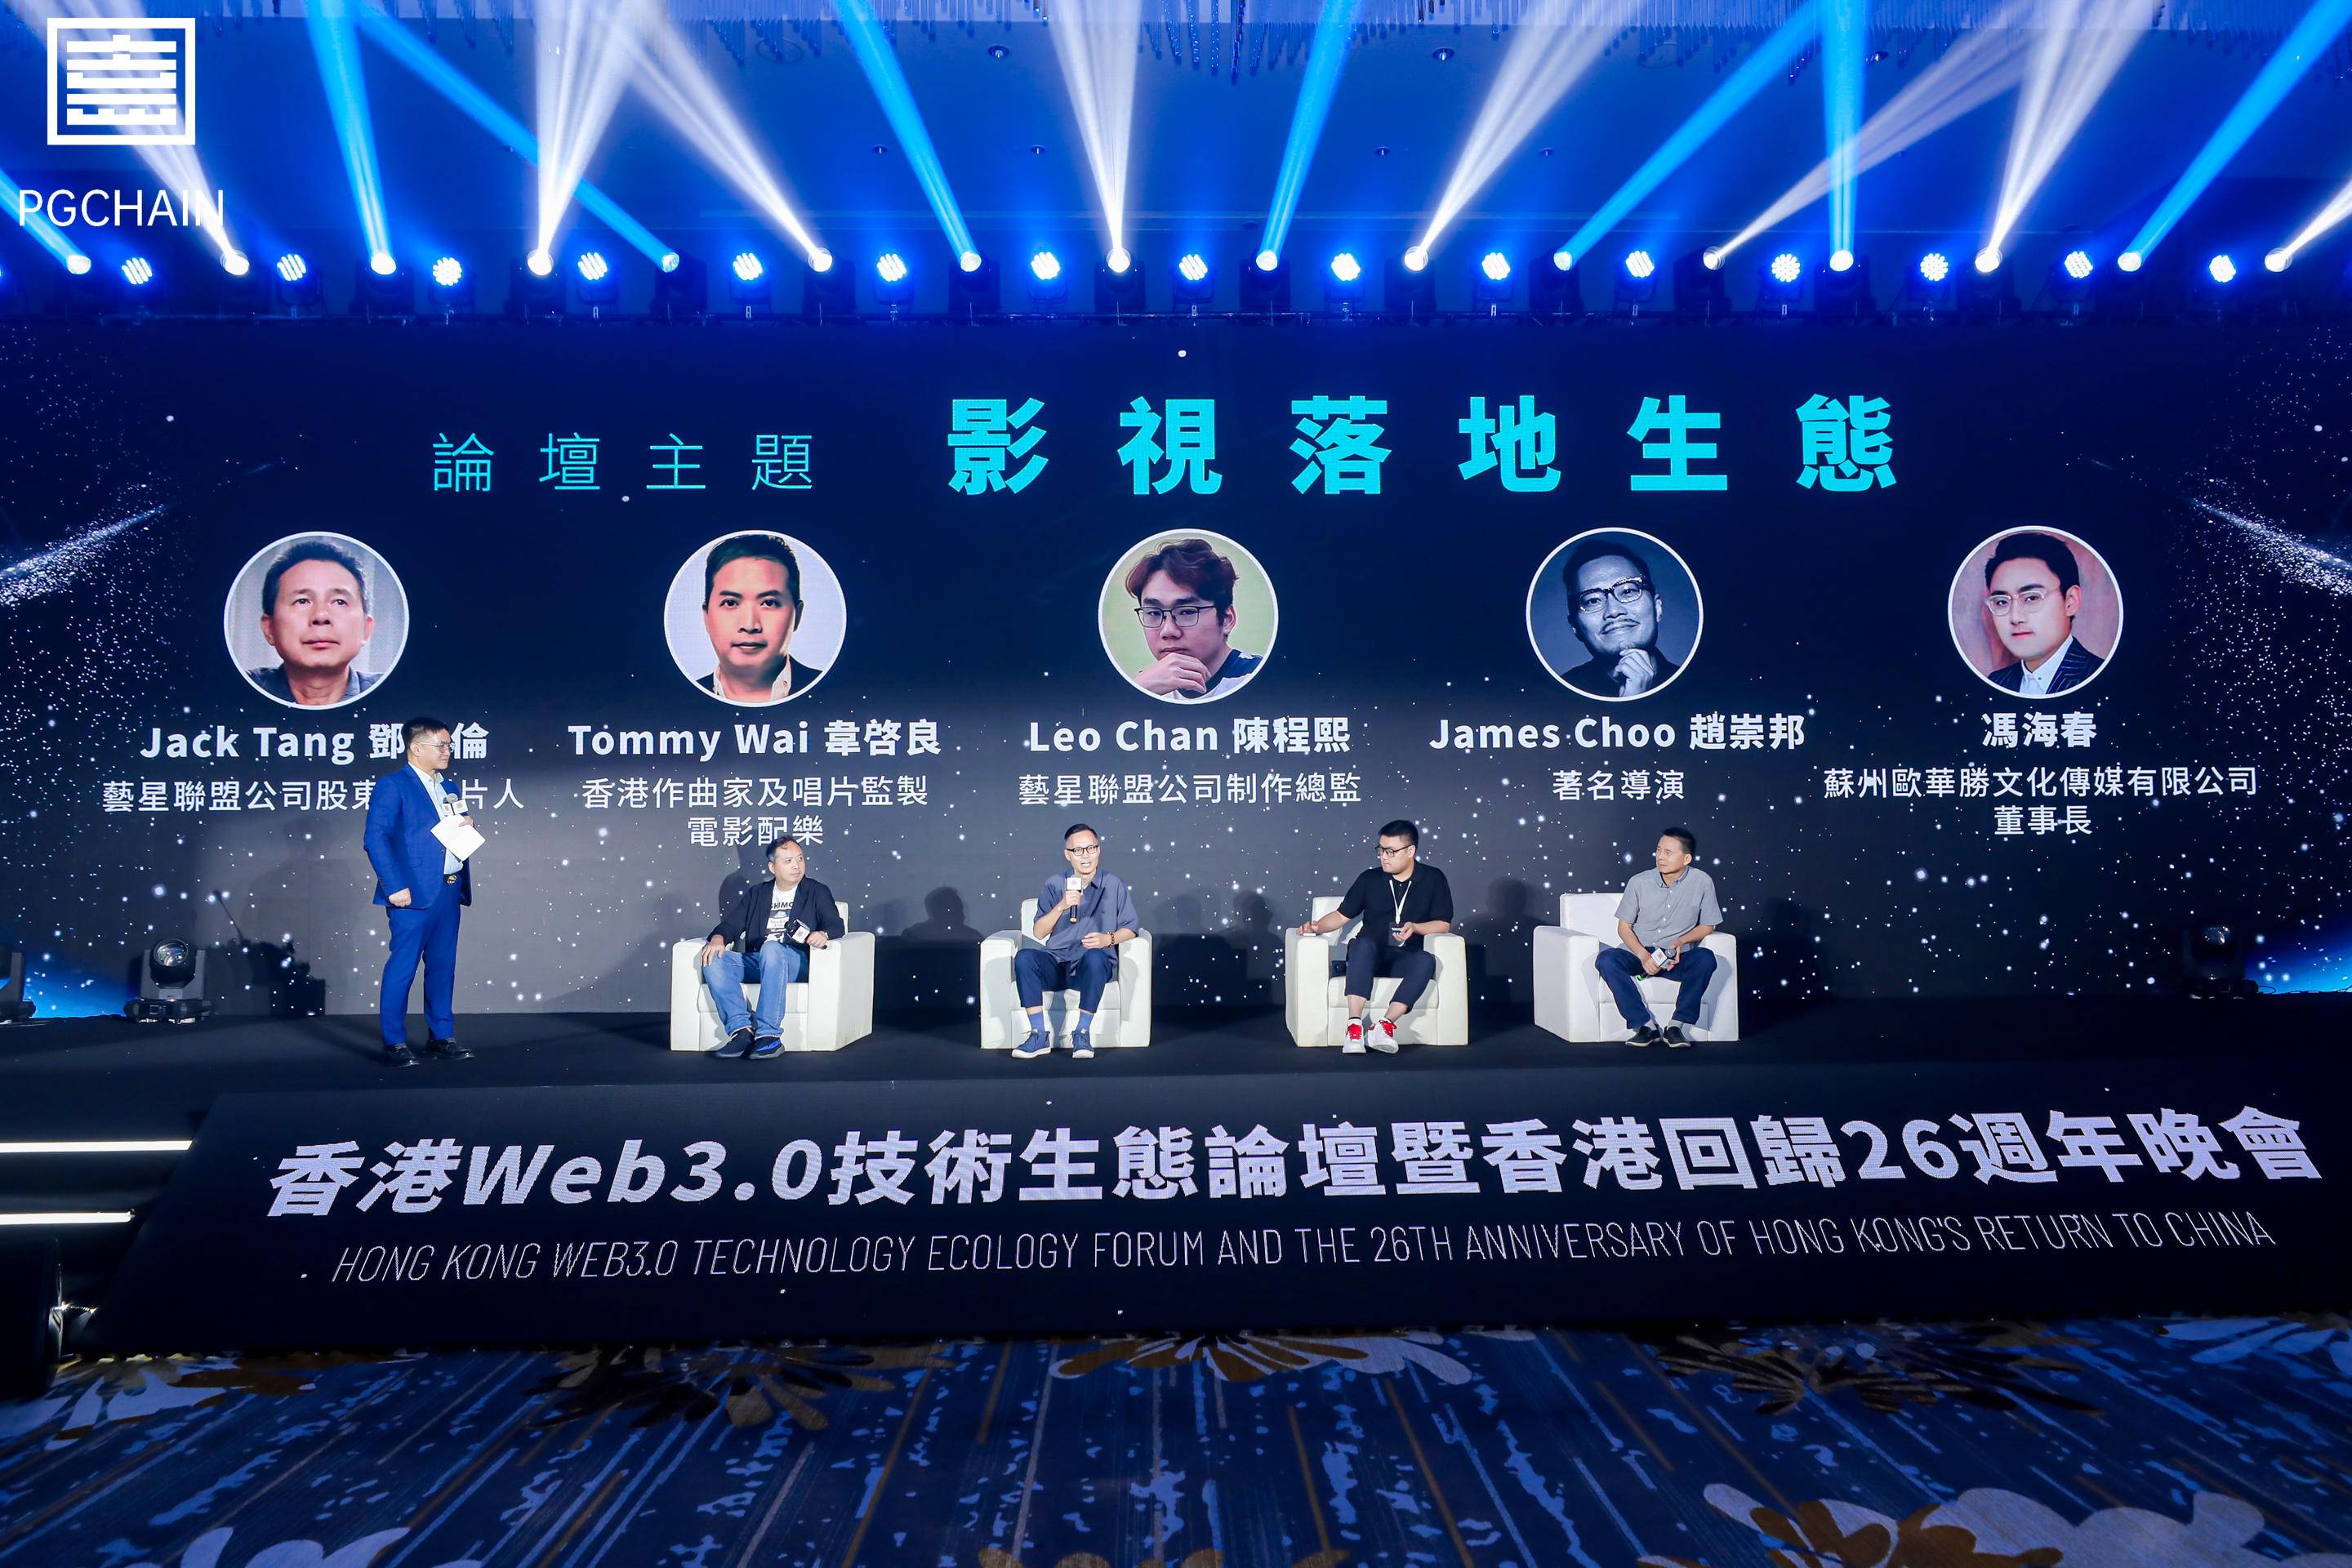 香港Web3.0技術生態論壇暨香港回歸26週年晚會